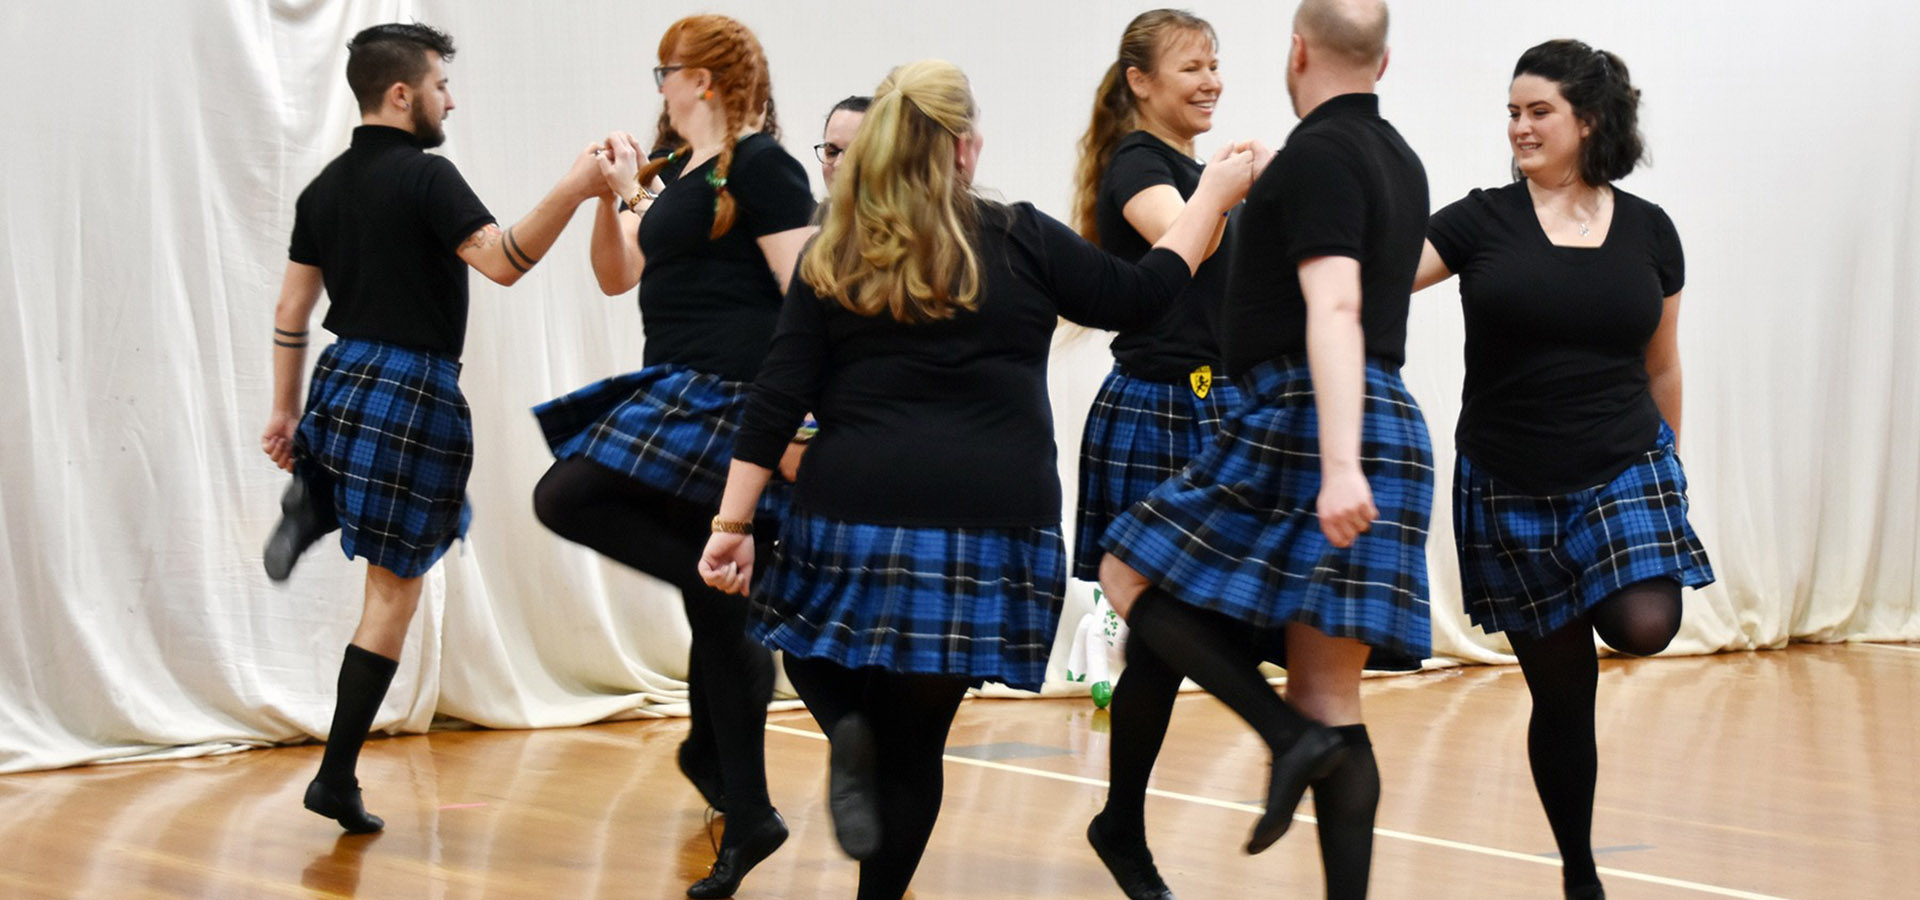 What is Irish ceili dancing?